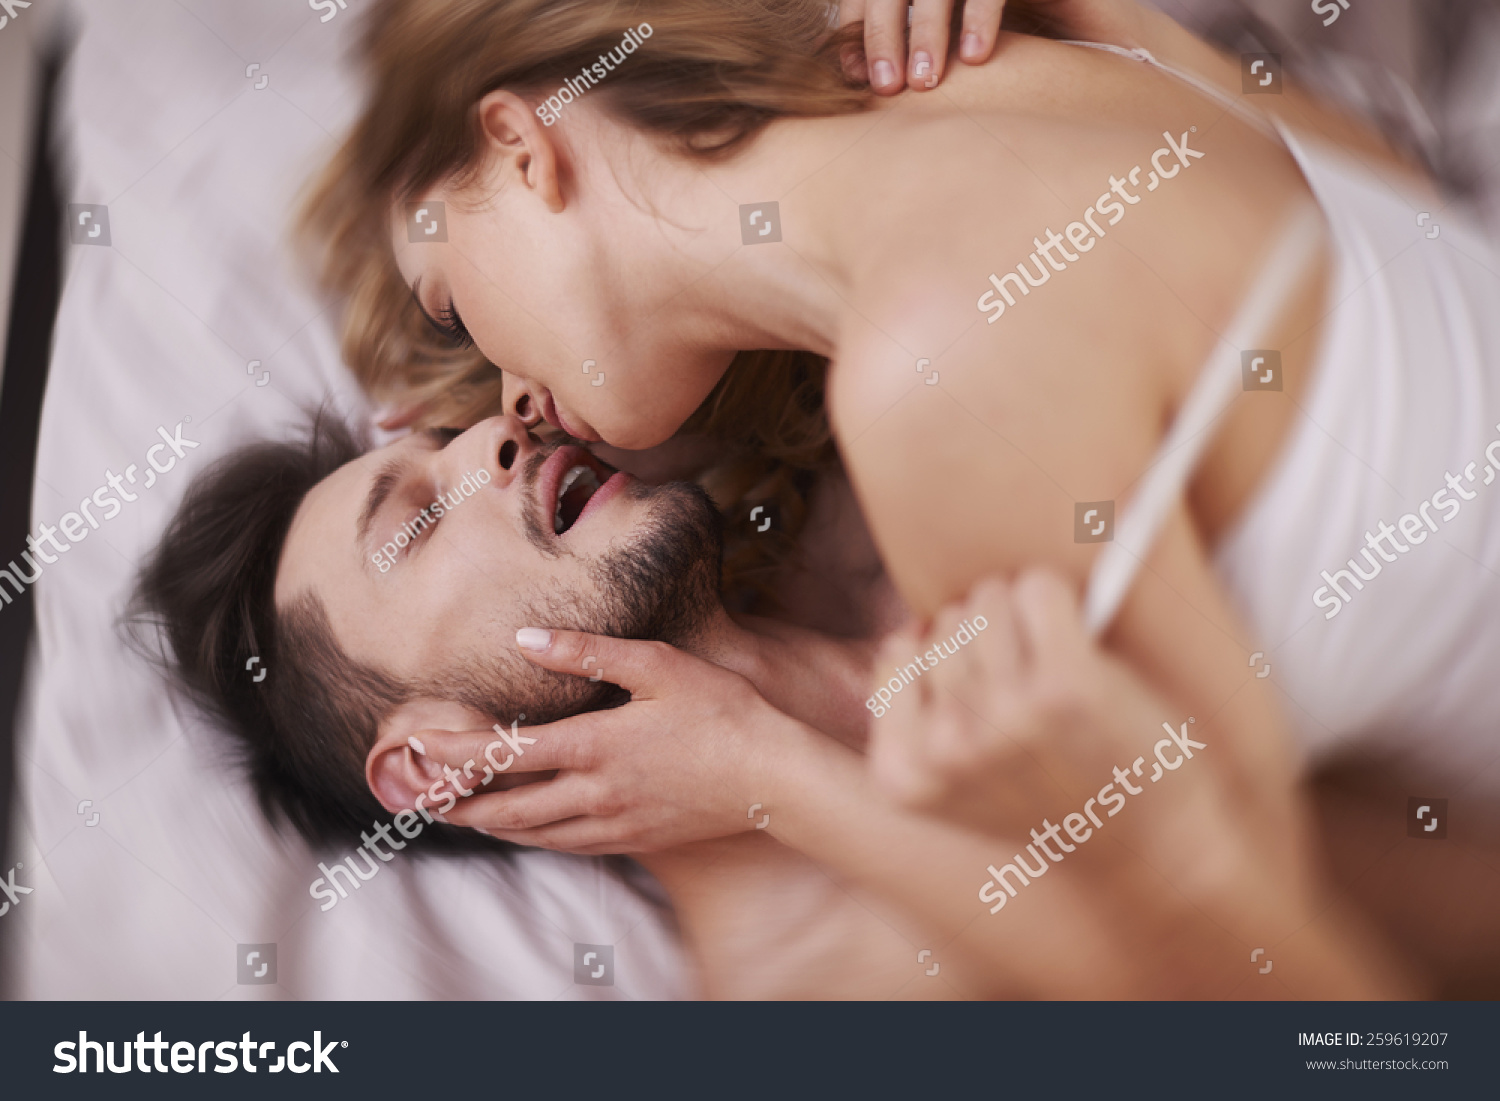 Pasión y deseo en la cama Foto de stock 259619207 Shutterstock.